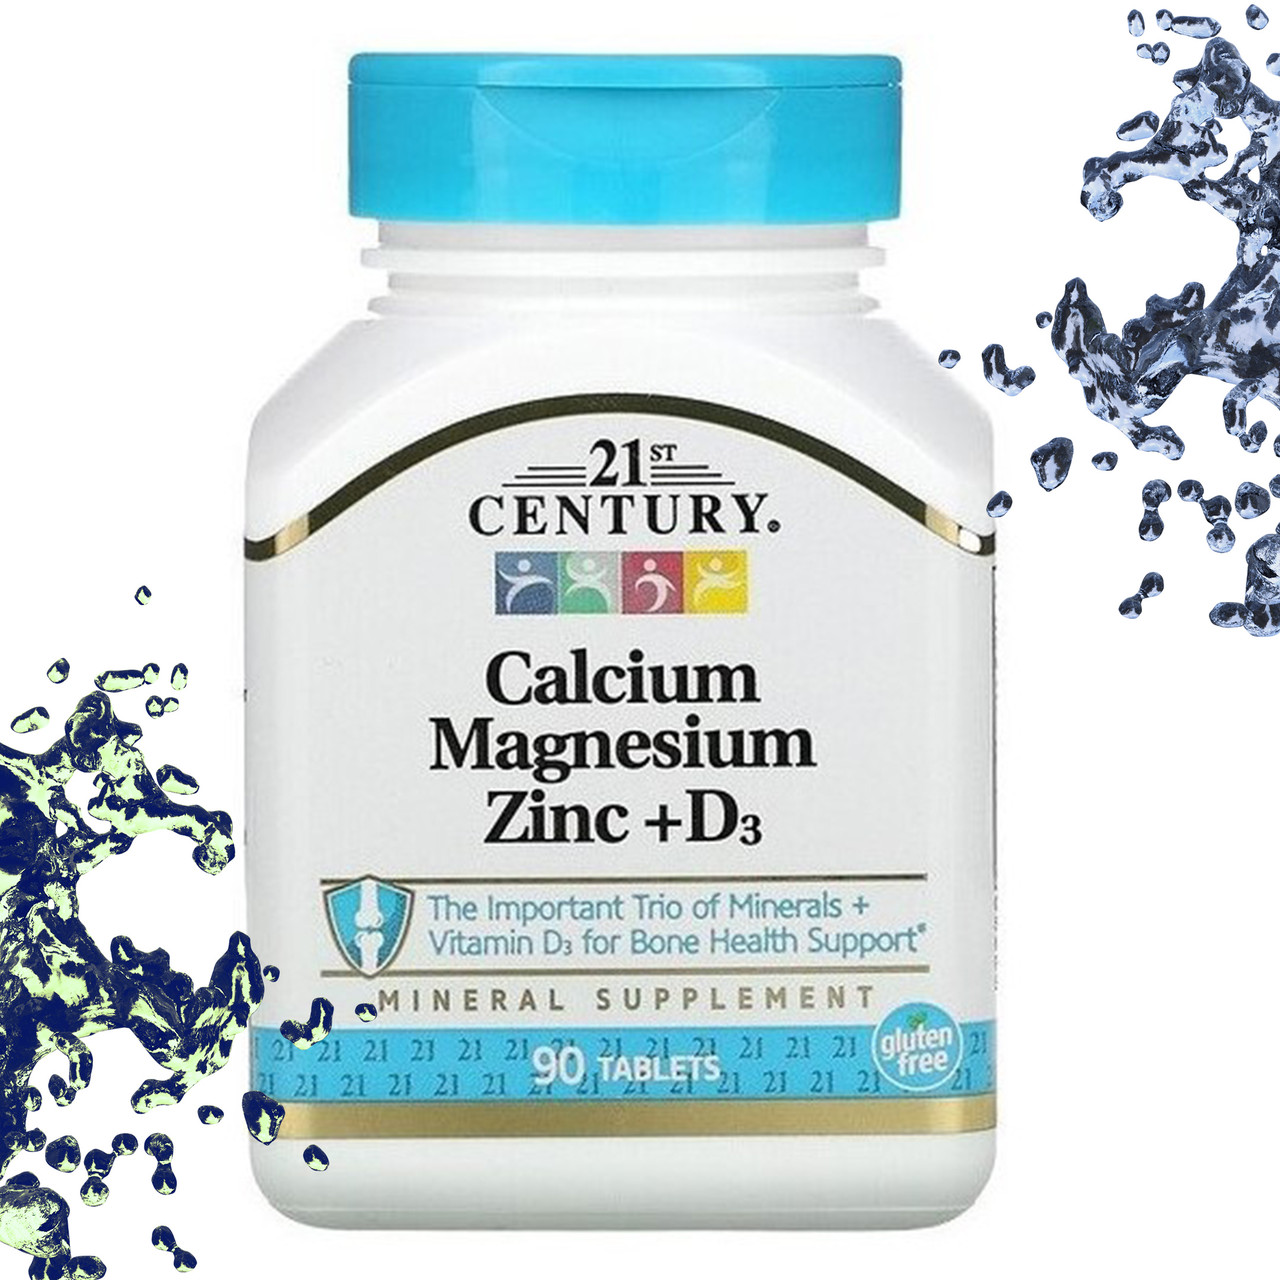 Calcium magnesium with vitamin d3 отзывы. Кальций магний цинк д3 комплекс. Calcium Magnesium Zinc + d3 таблетки. Calcium Magnesium Zinc d3 таб 60 шт. Century 21 витамины Calcium Magnesium Zinc d3.